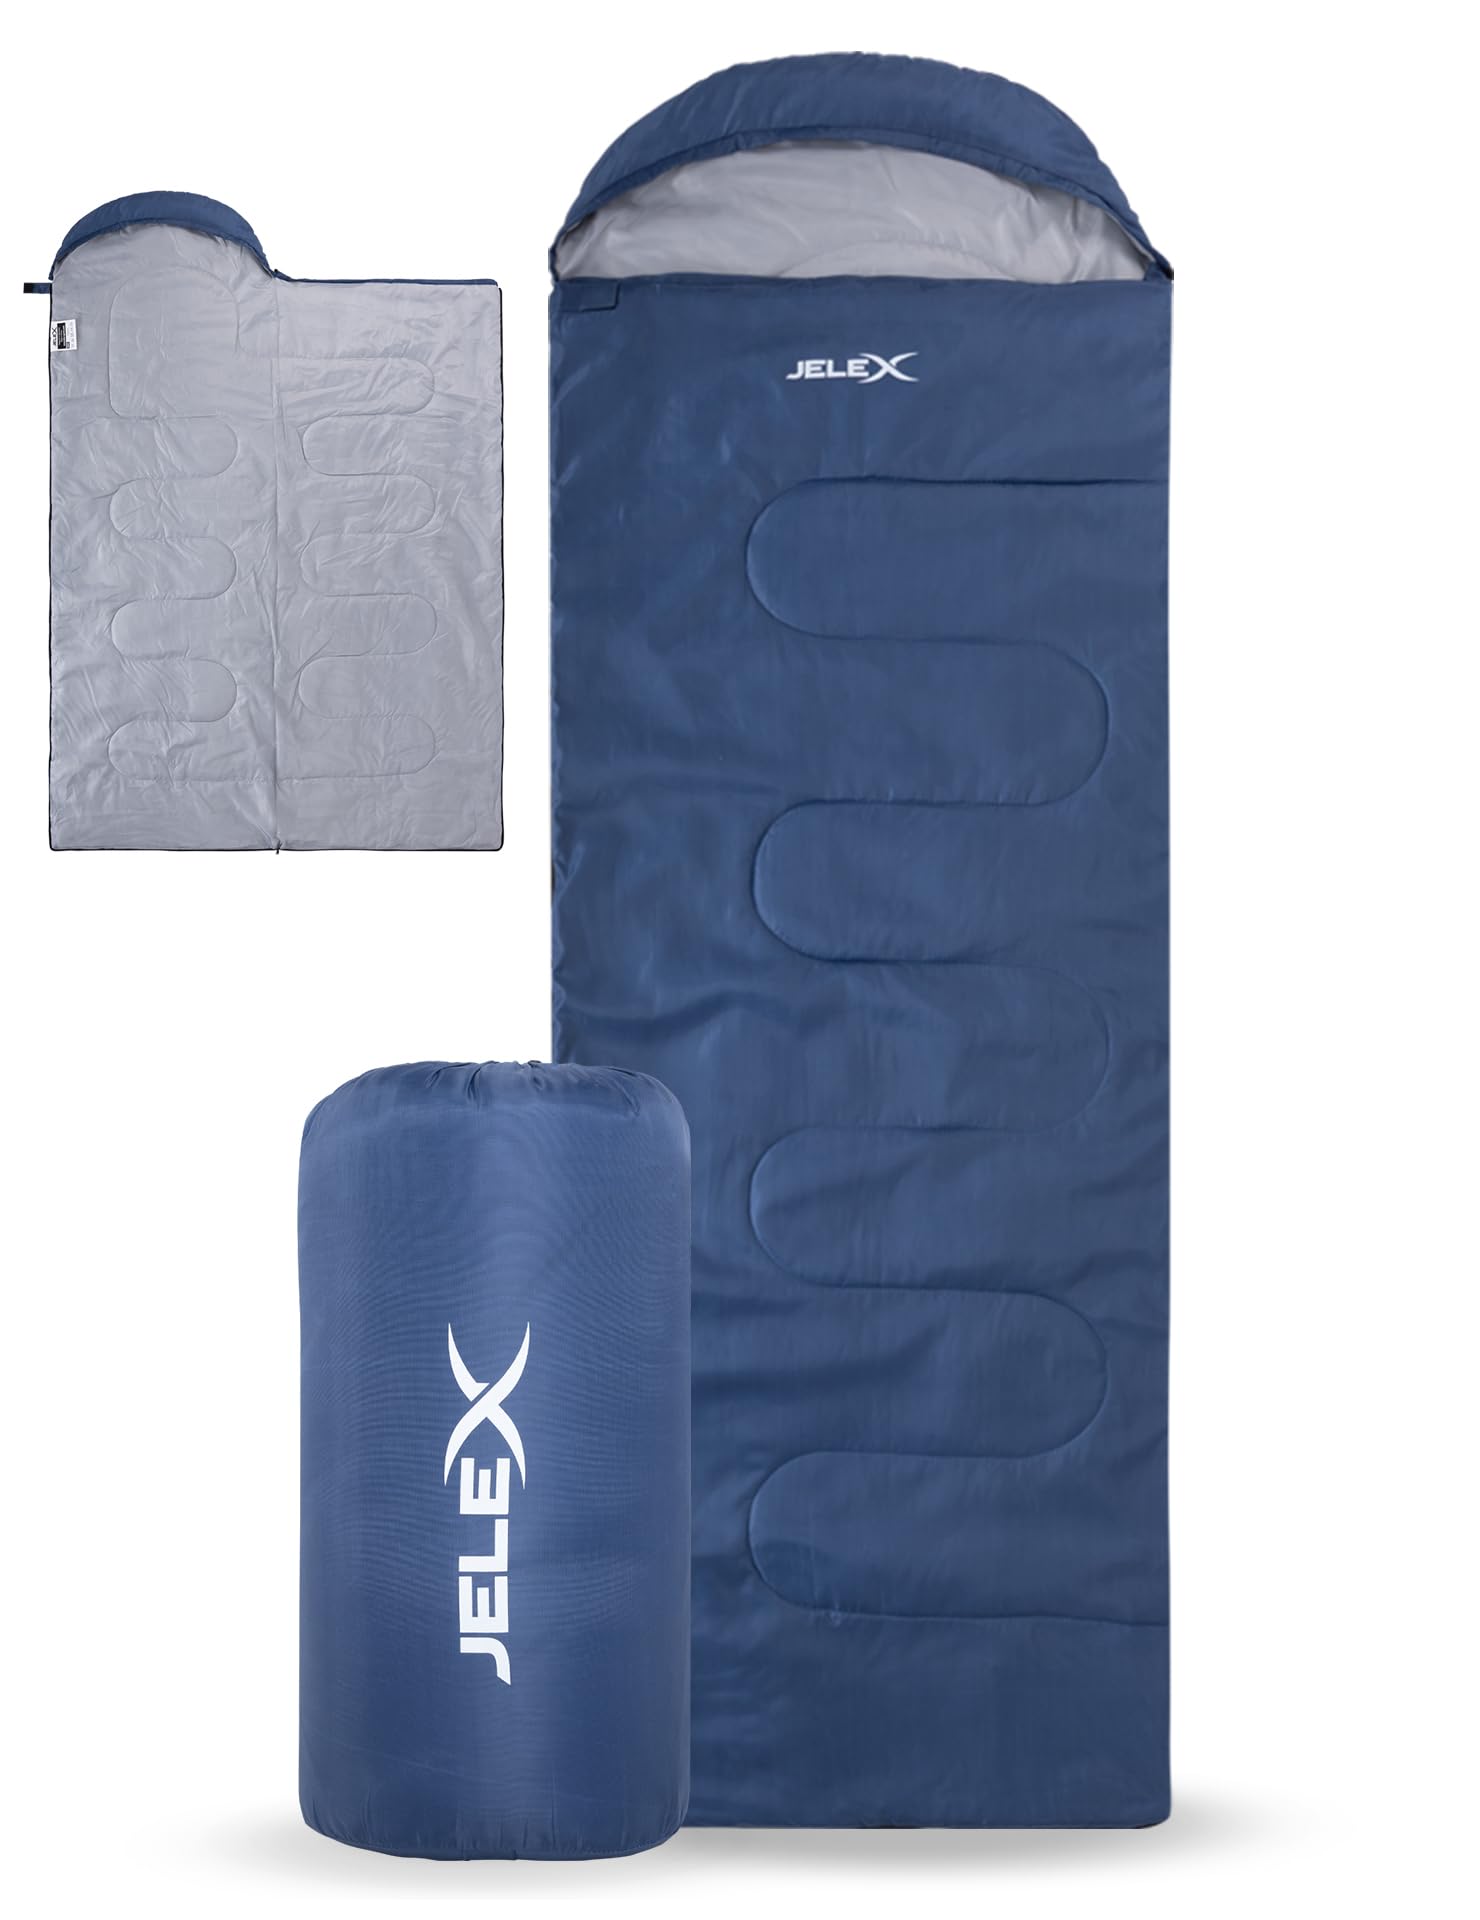 JELEX Outdoor Camping ultraleichter Schlafsack 220 x 75 cm, Komfortbereich 15 °C, mit Kapuzen-Kopfteil und Deckenfunktion, aus antistatisches Material (blau)